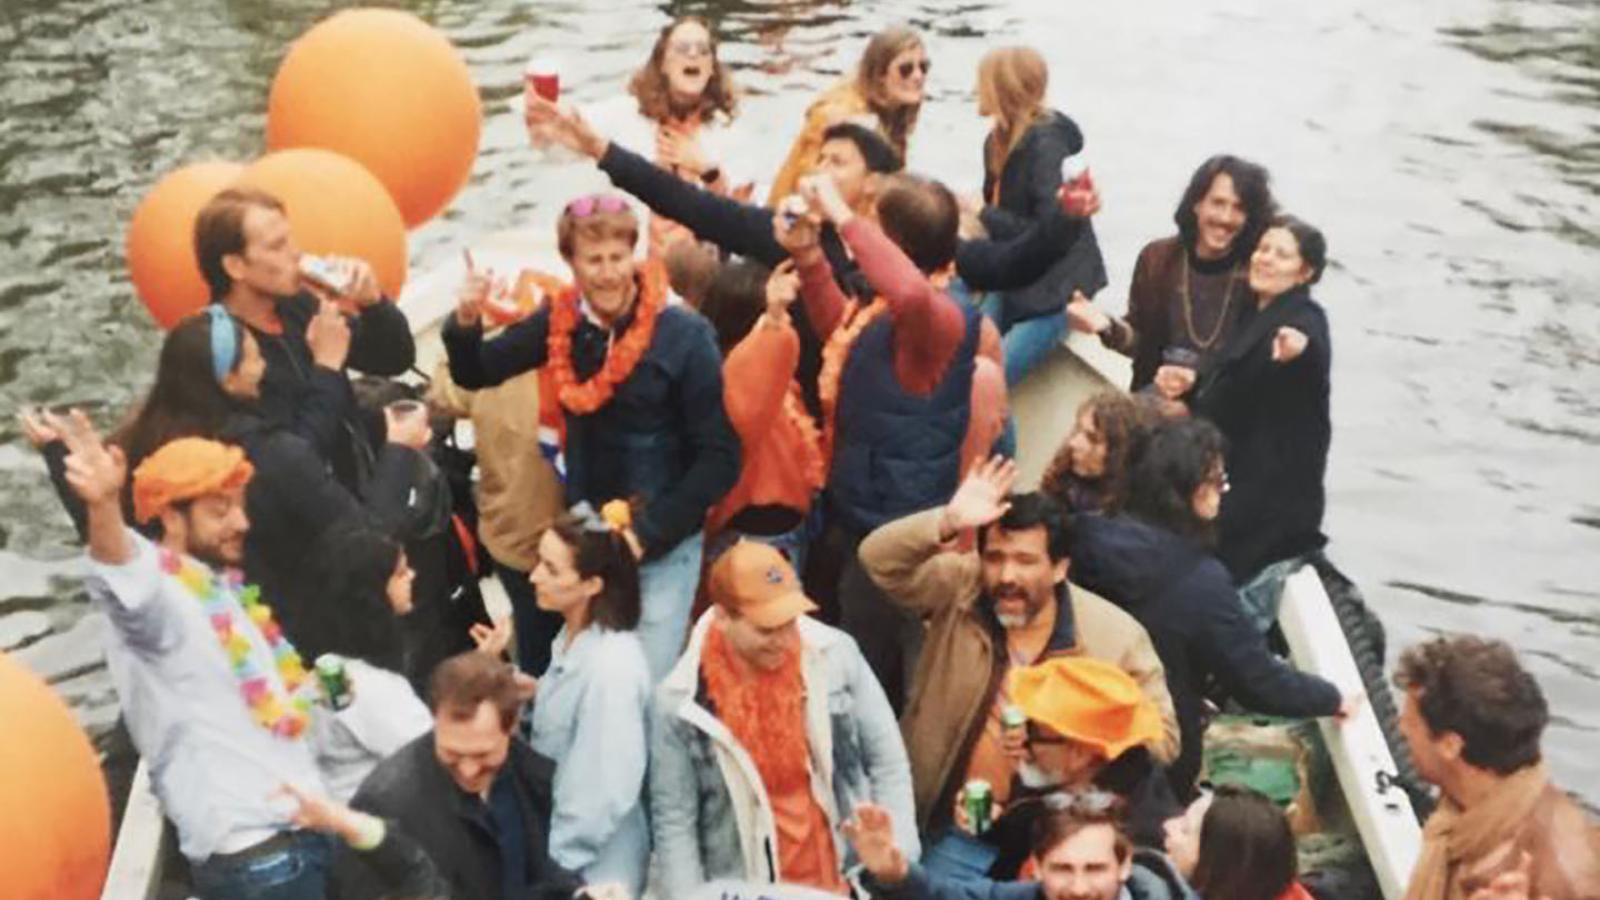 Im Vordergrund sind viele Menschen, die Meisten mit orangener Kleidung auf einem Bod zu sehen. Im Hintergrund sind andere kleine Boote auf dem Wasser.